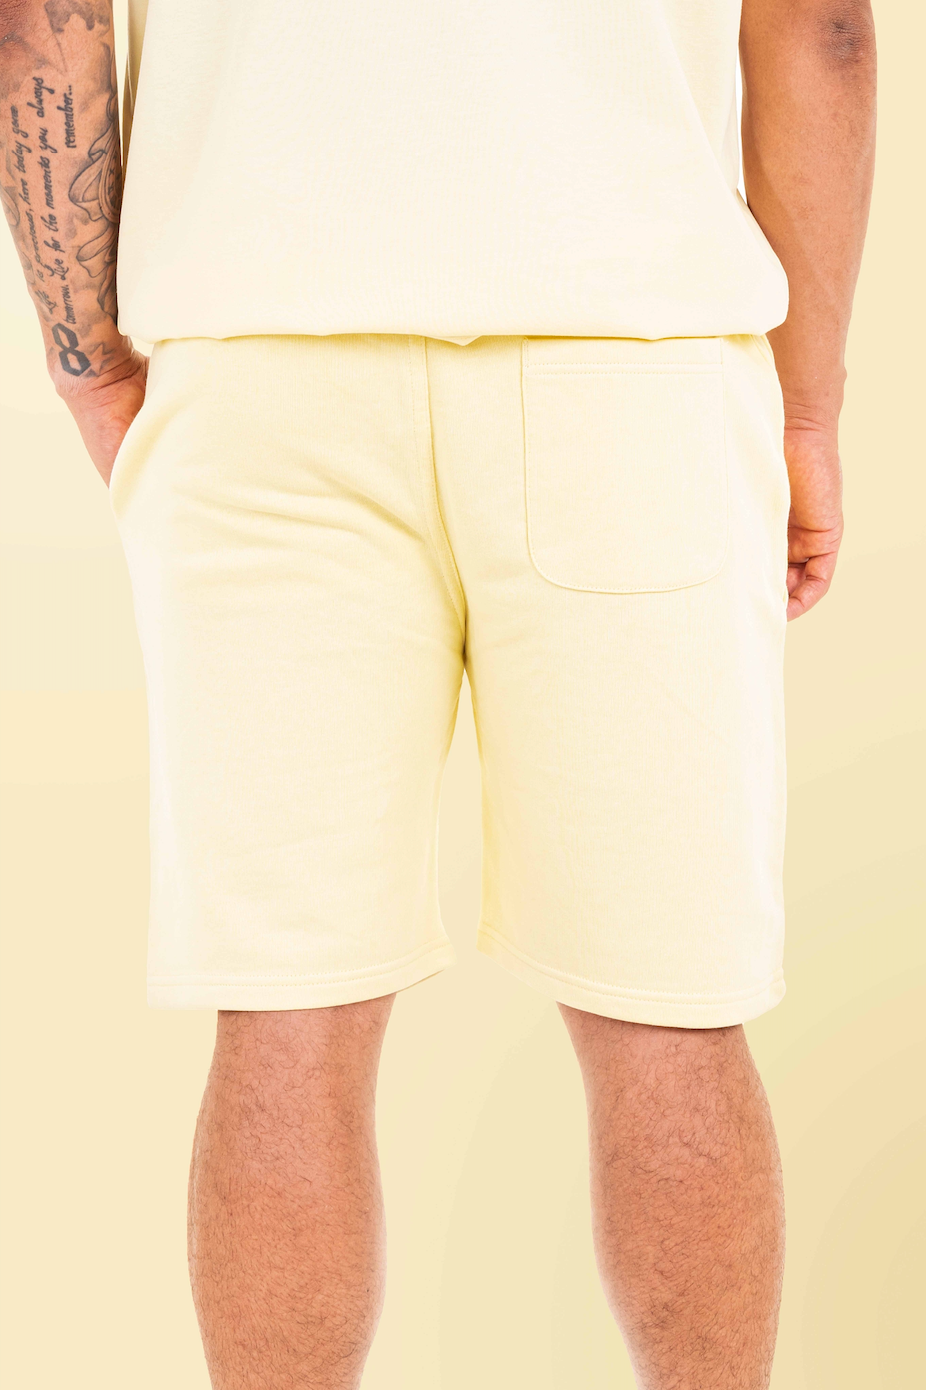 Lemon Premium Organic Shorts